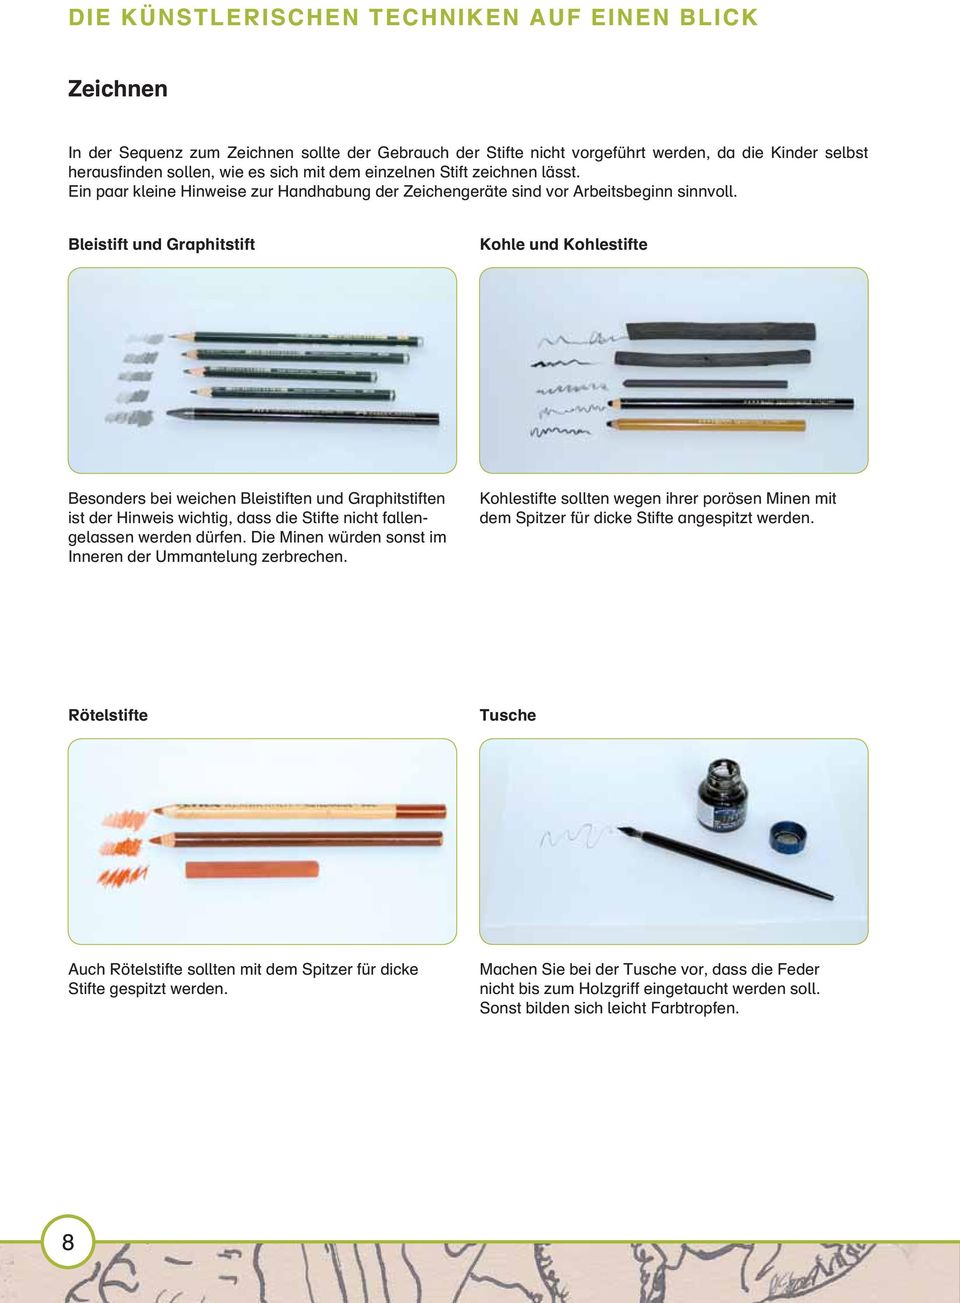 Bleistift und Graphitstift Kohle und Kohlestifte ((61)) Besonders bei weichen Bleistiften und Graphitstiften ist der Hinweis wichtig, dass die Stifte nicht fallengelassen werden dürfen.